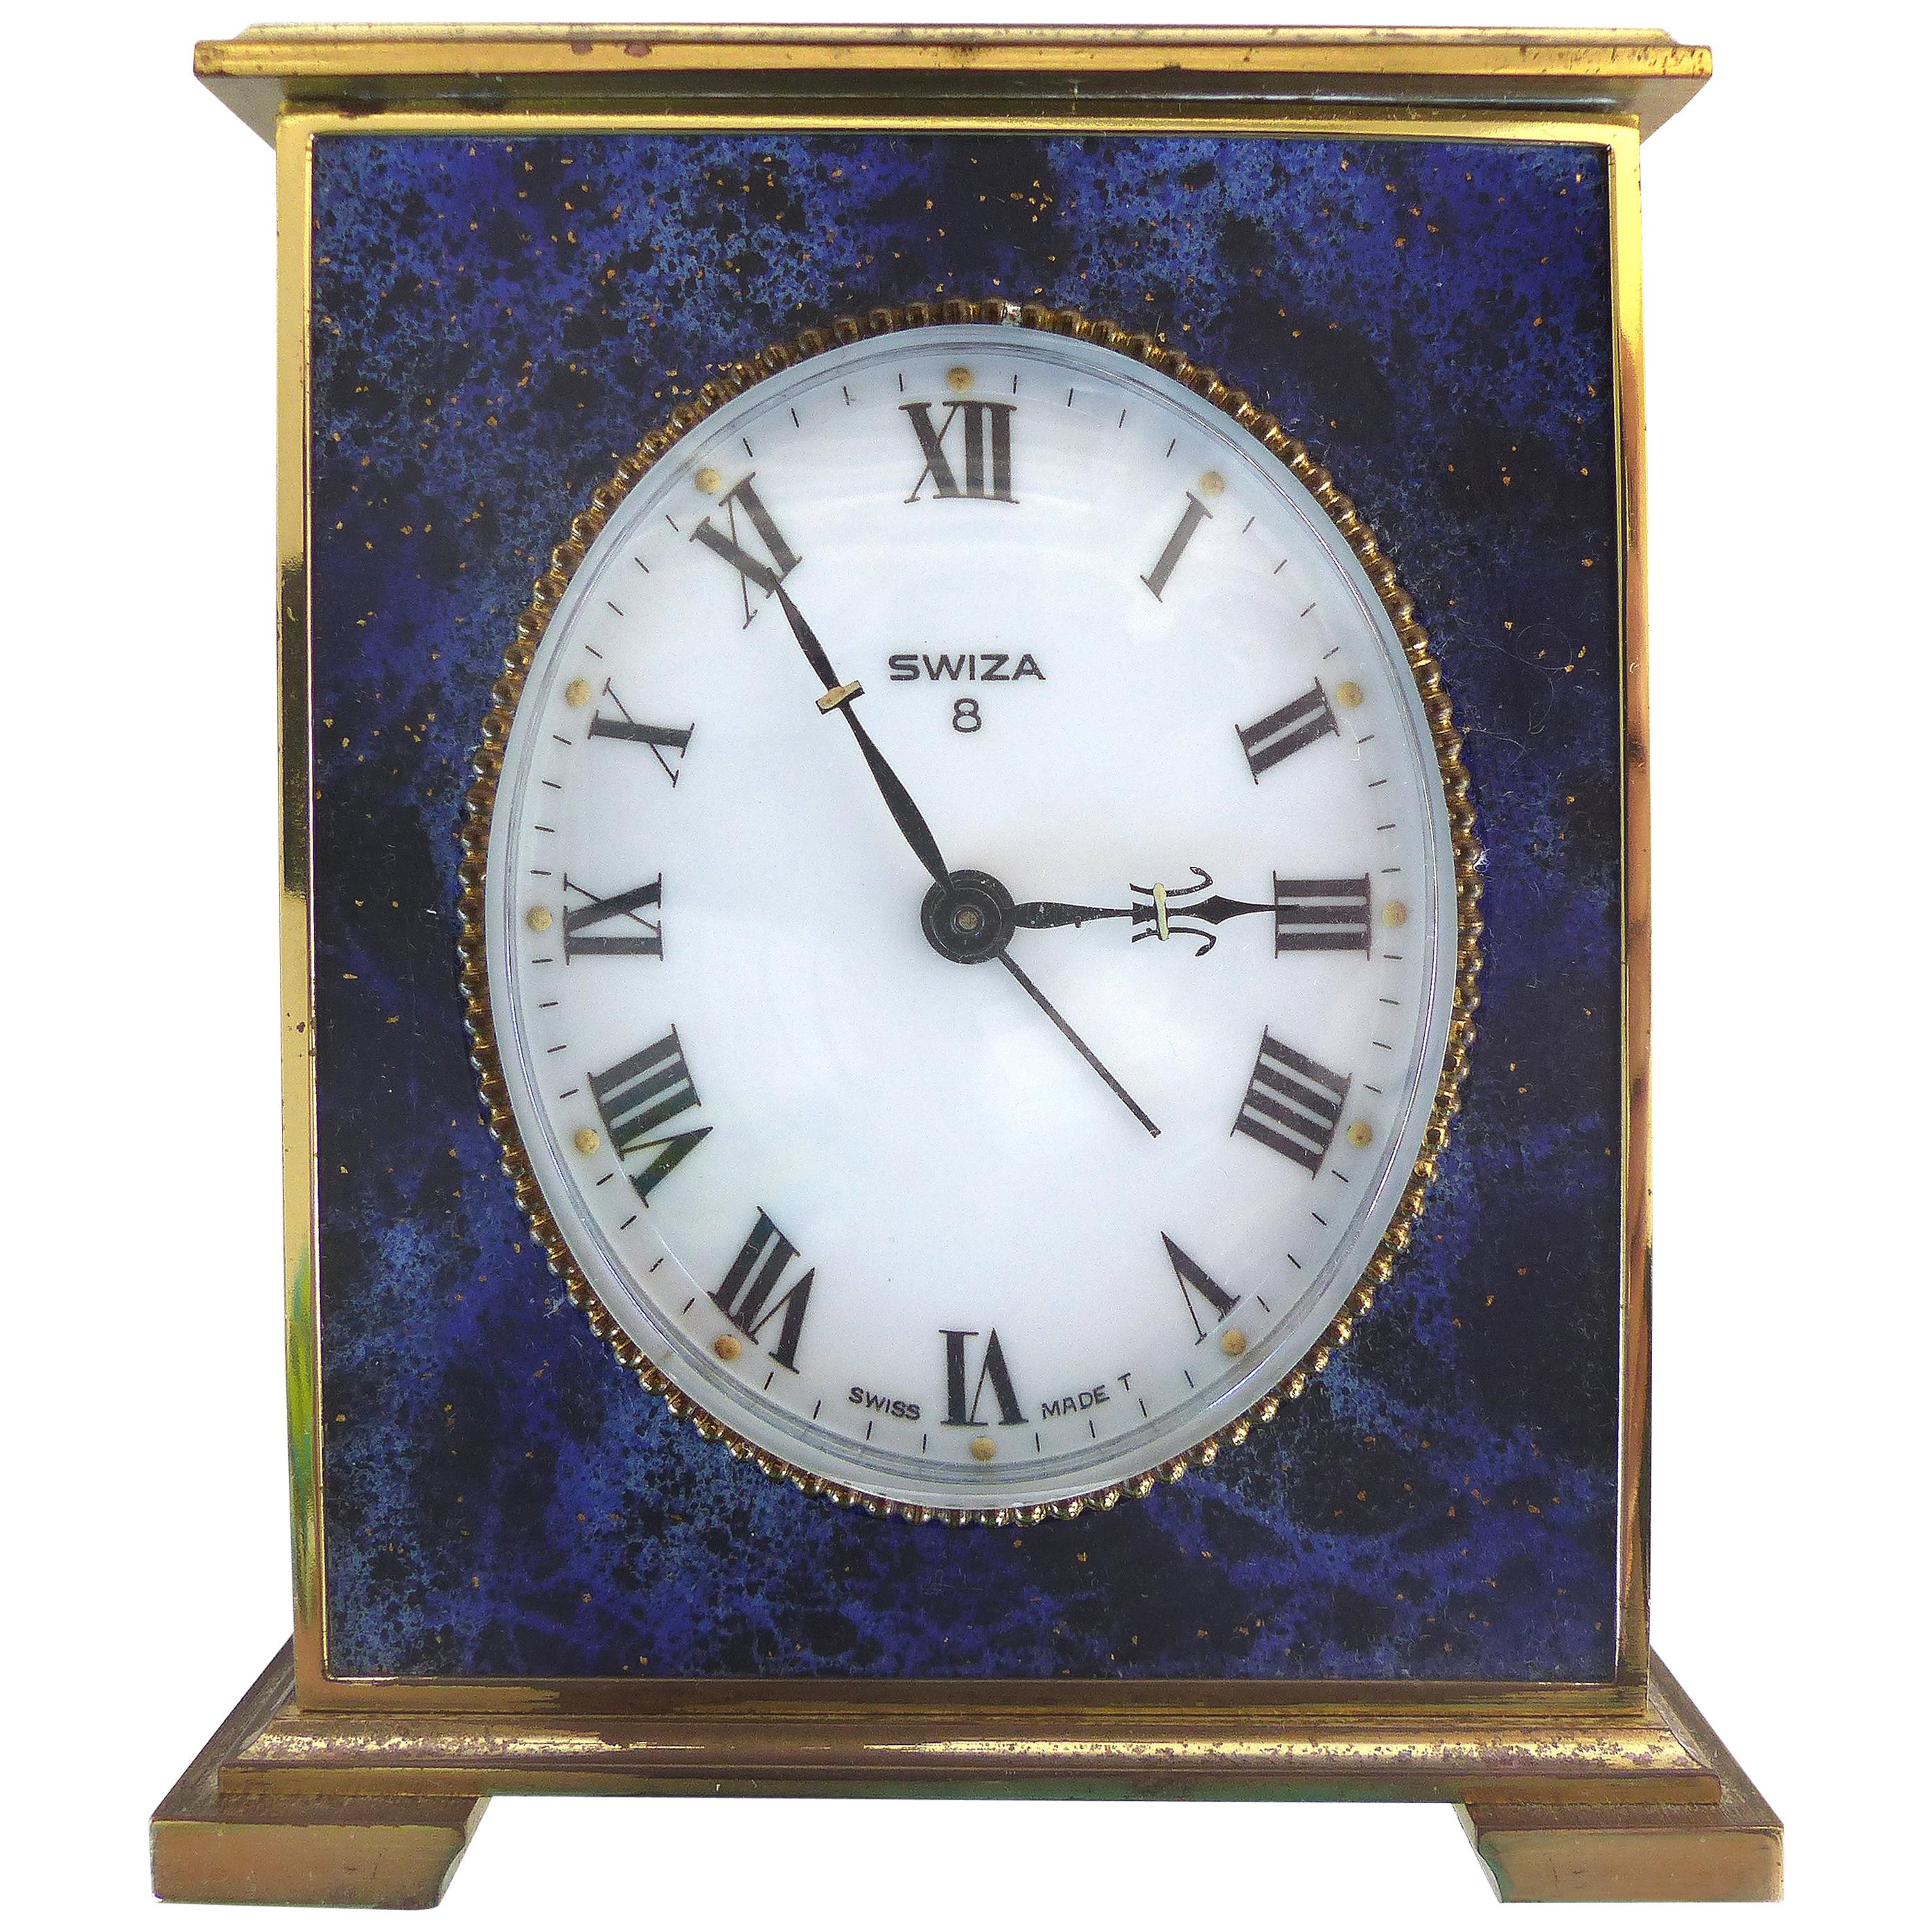 Swiza 8 Swiss Made Lapis Lazuli & Brass Winding Carriage Clock